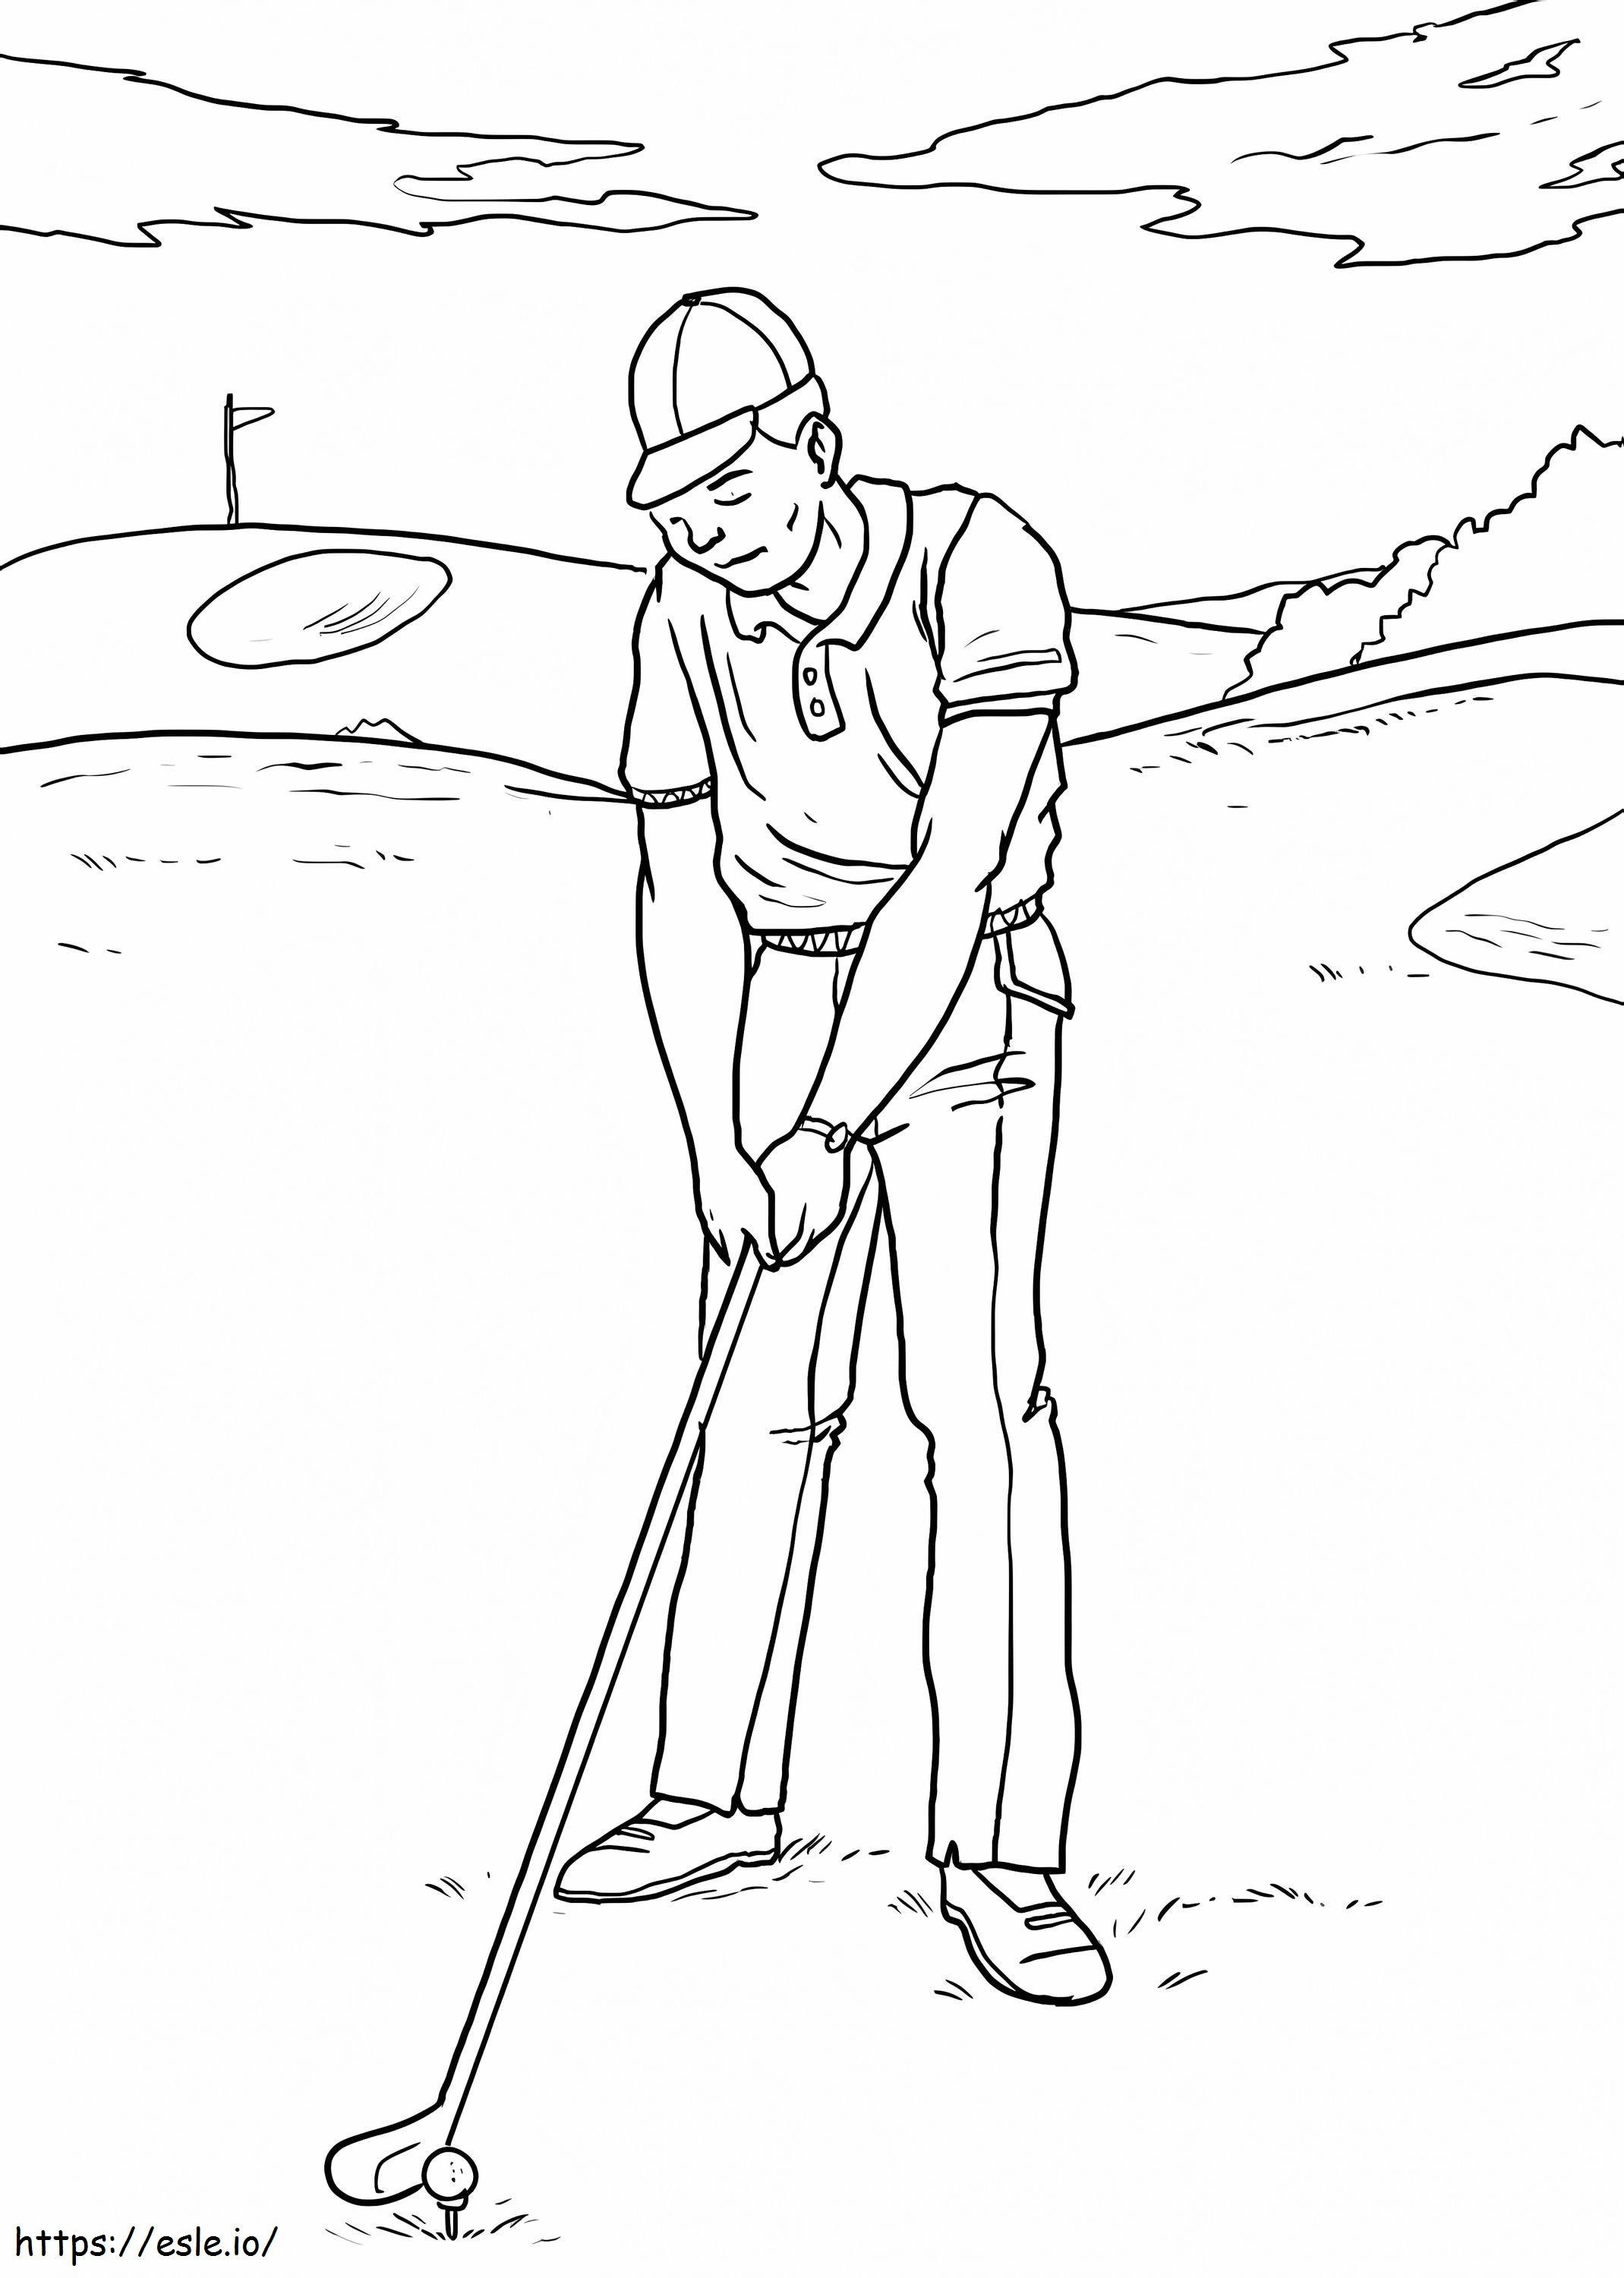 Mann spielt Golf ausmalbilder